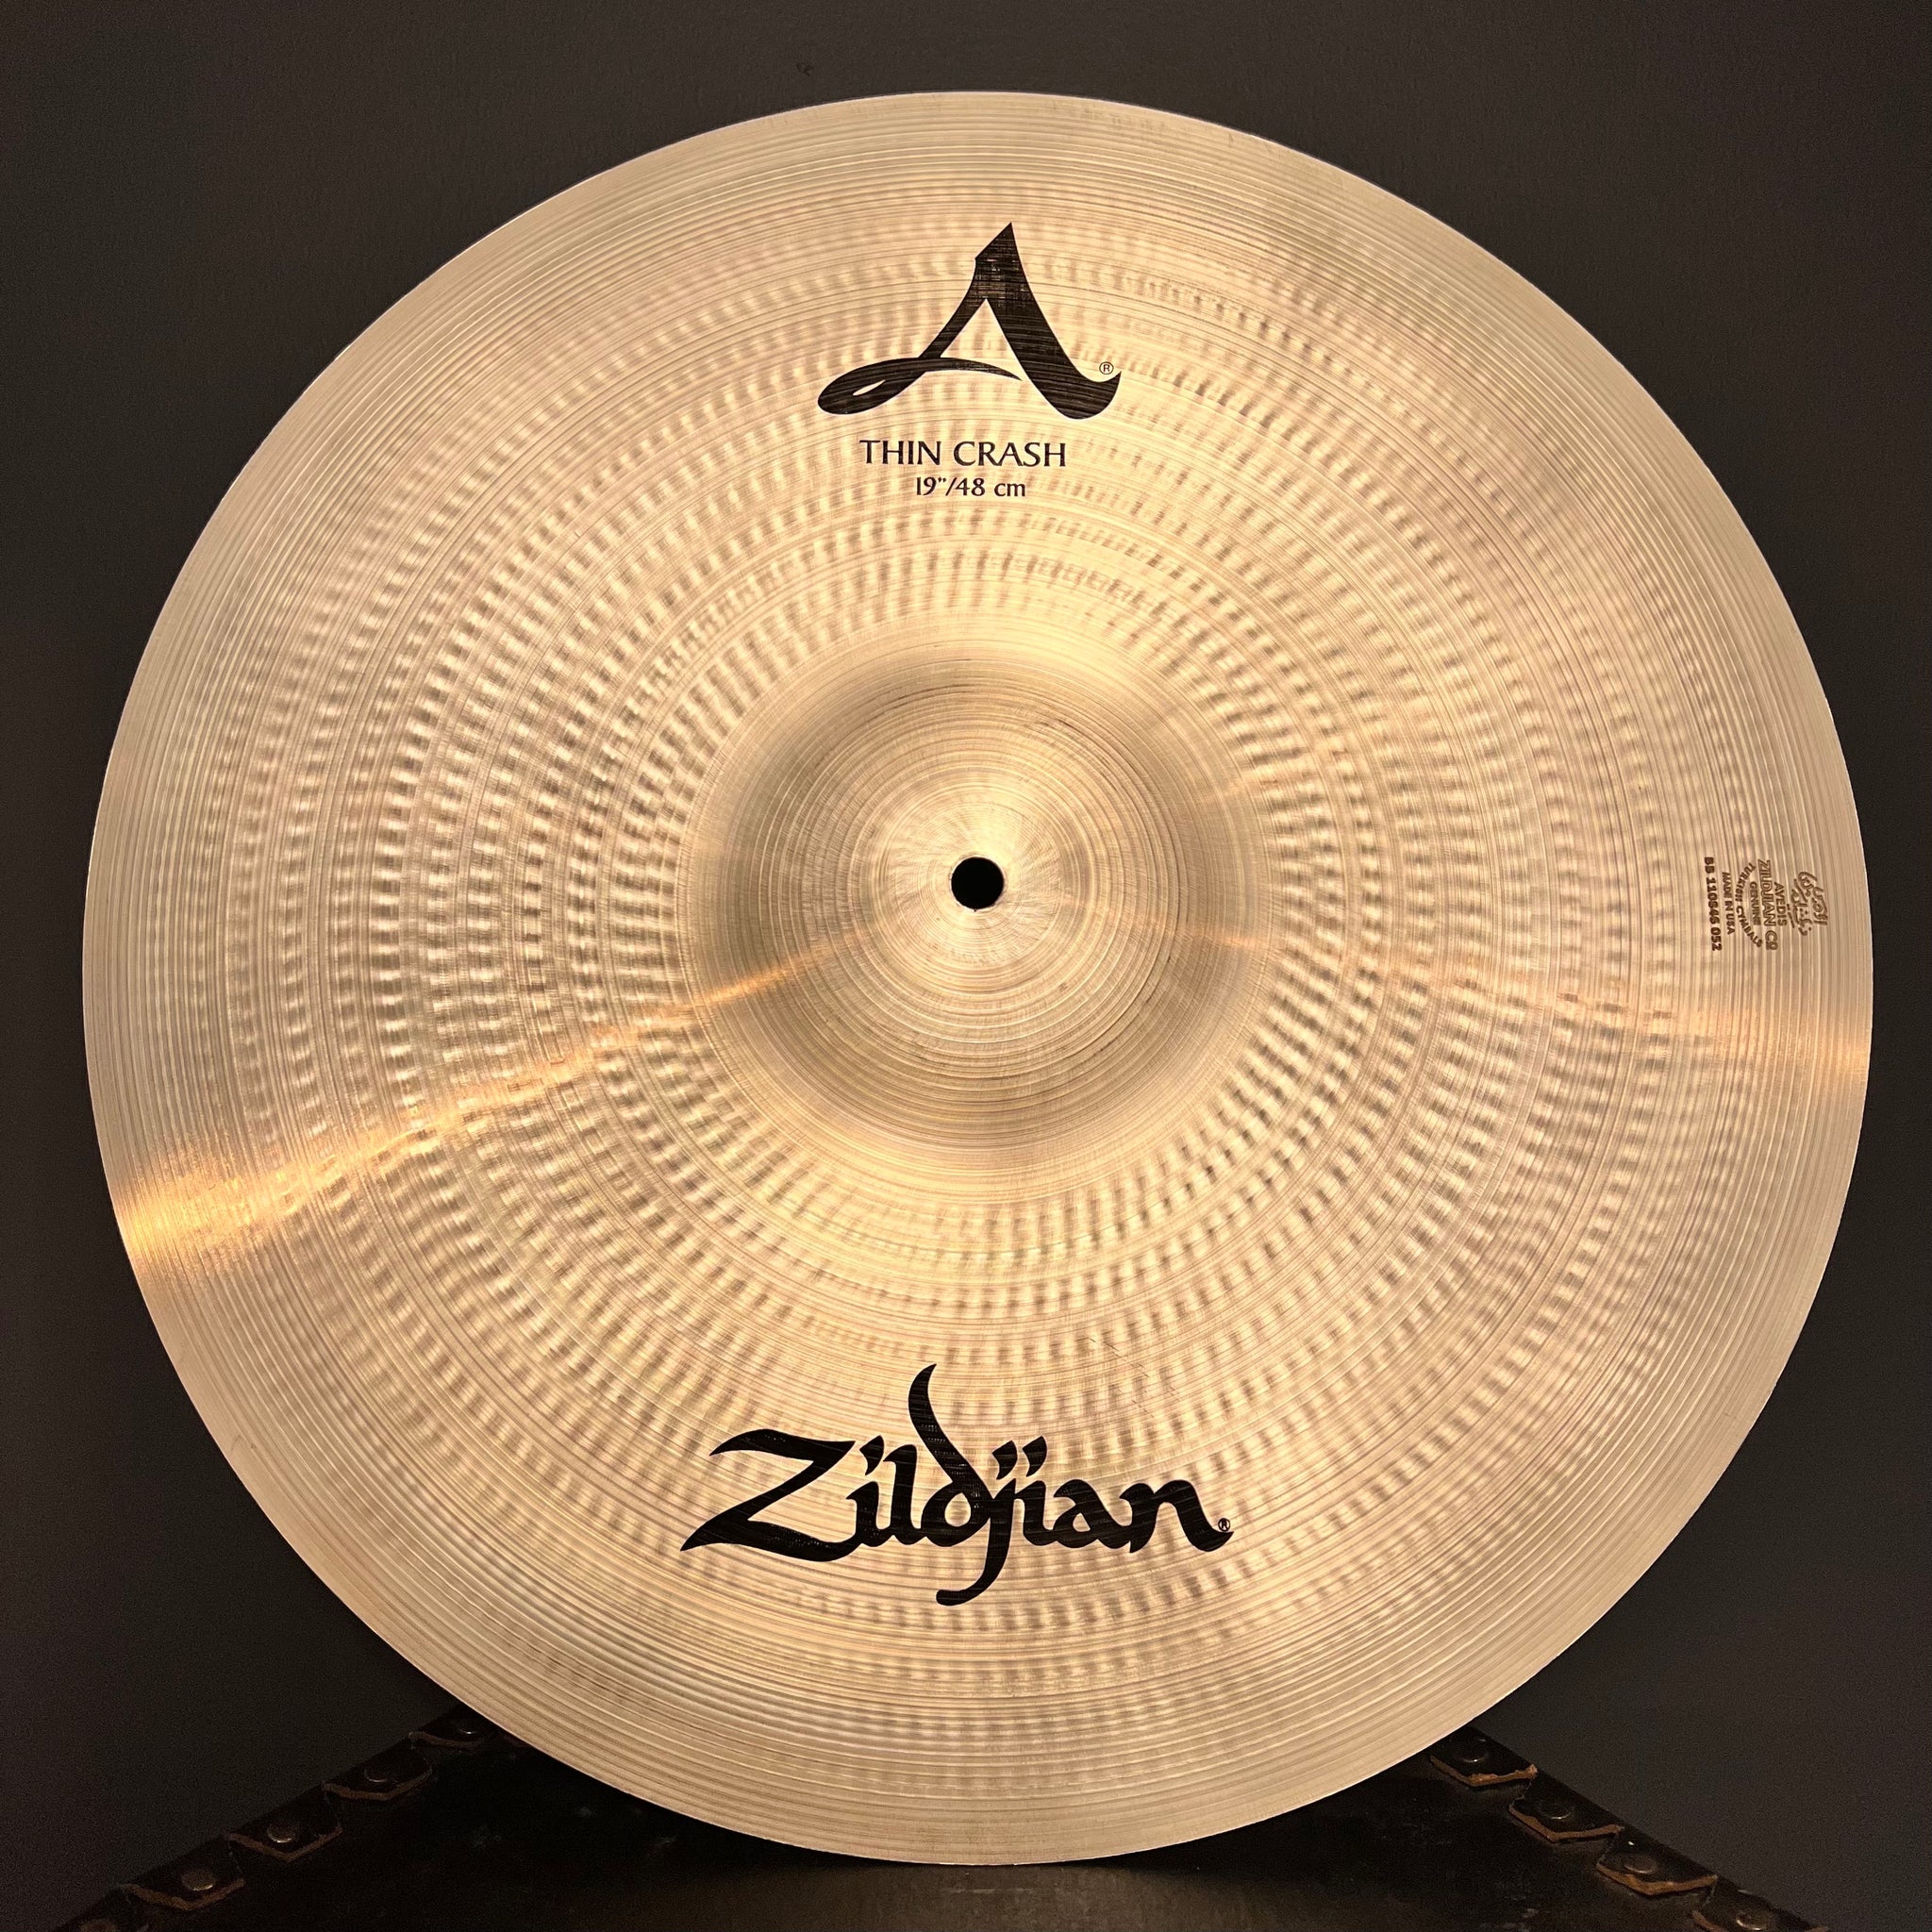 NEW Zildjian 19" A. Zildjian Thin Crash Cymbal - 1515g